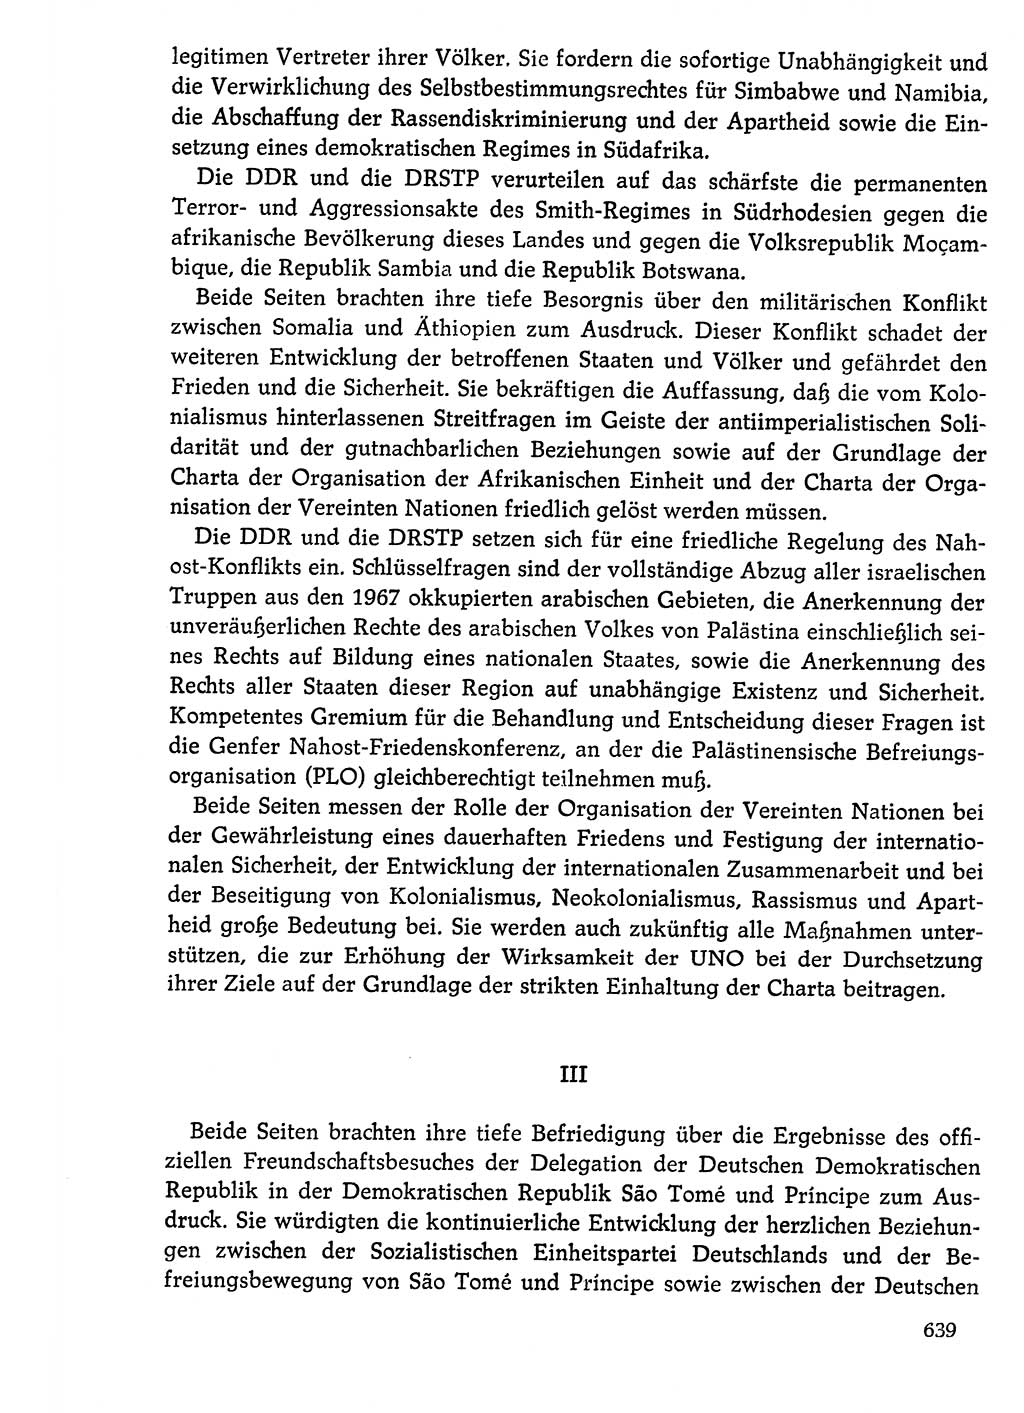 Dokumente der Sozialistischen Einheitspartei Deutschlands (SED) [Deutsche Demokratische Republik (DDR)] 1976-1977, Seite 639 (Dok. SED DDR 1976-1977, S. 639)